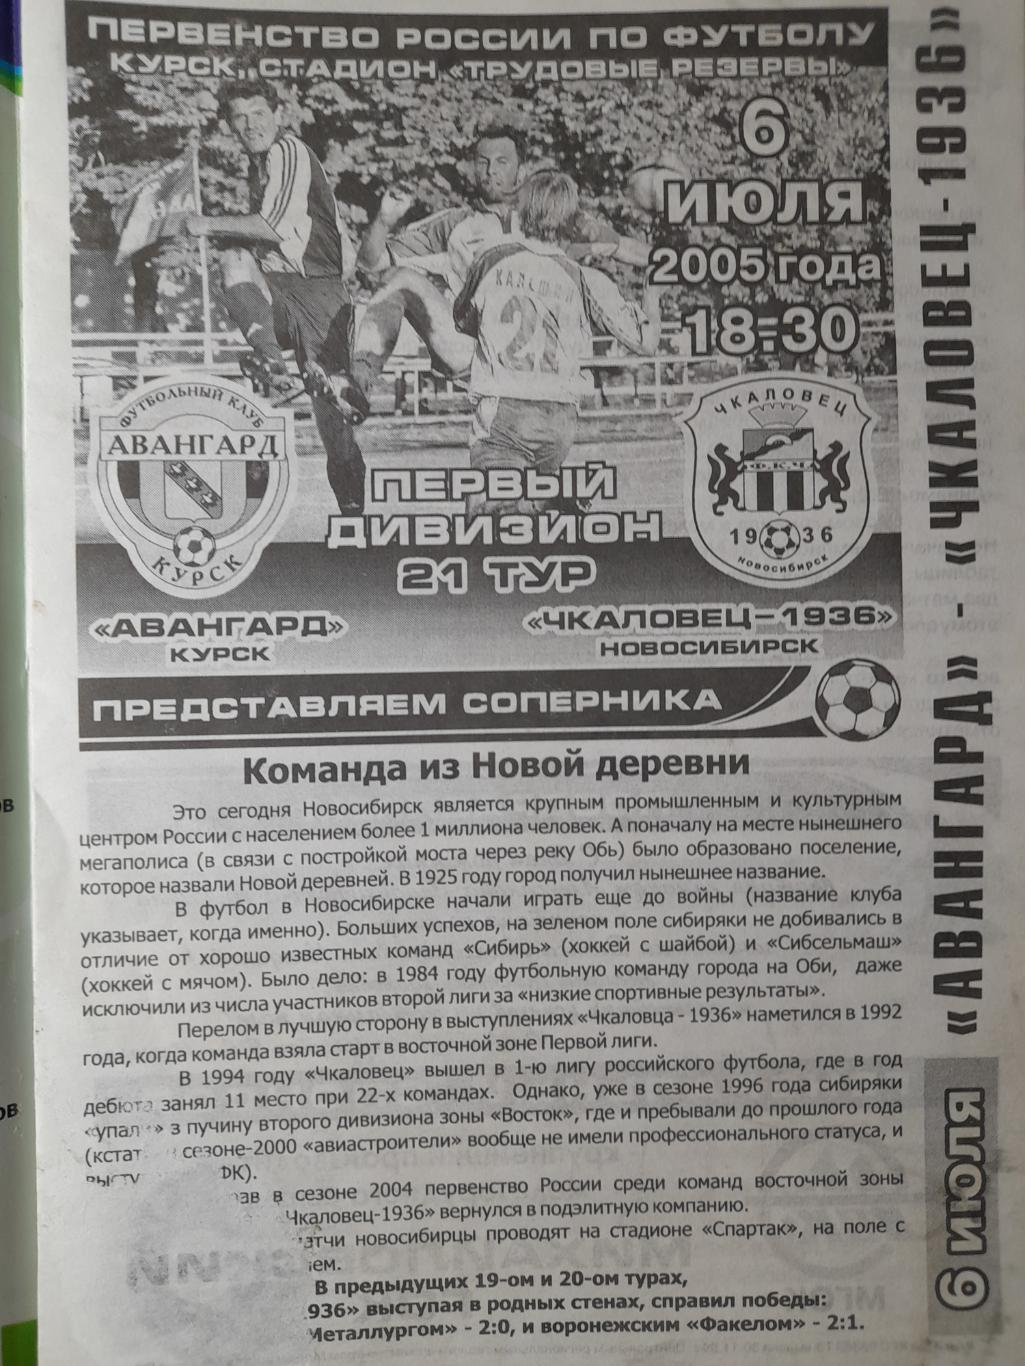 Авангард Курск - Чкаловец-1936 Новосибирск, Первый дивизион, 06.07.2005г. 1